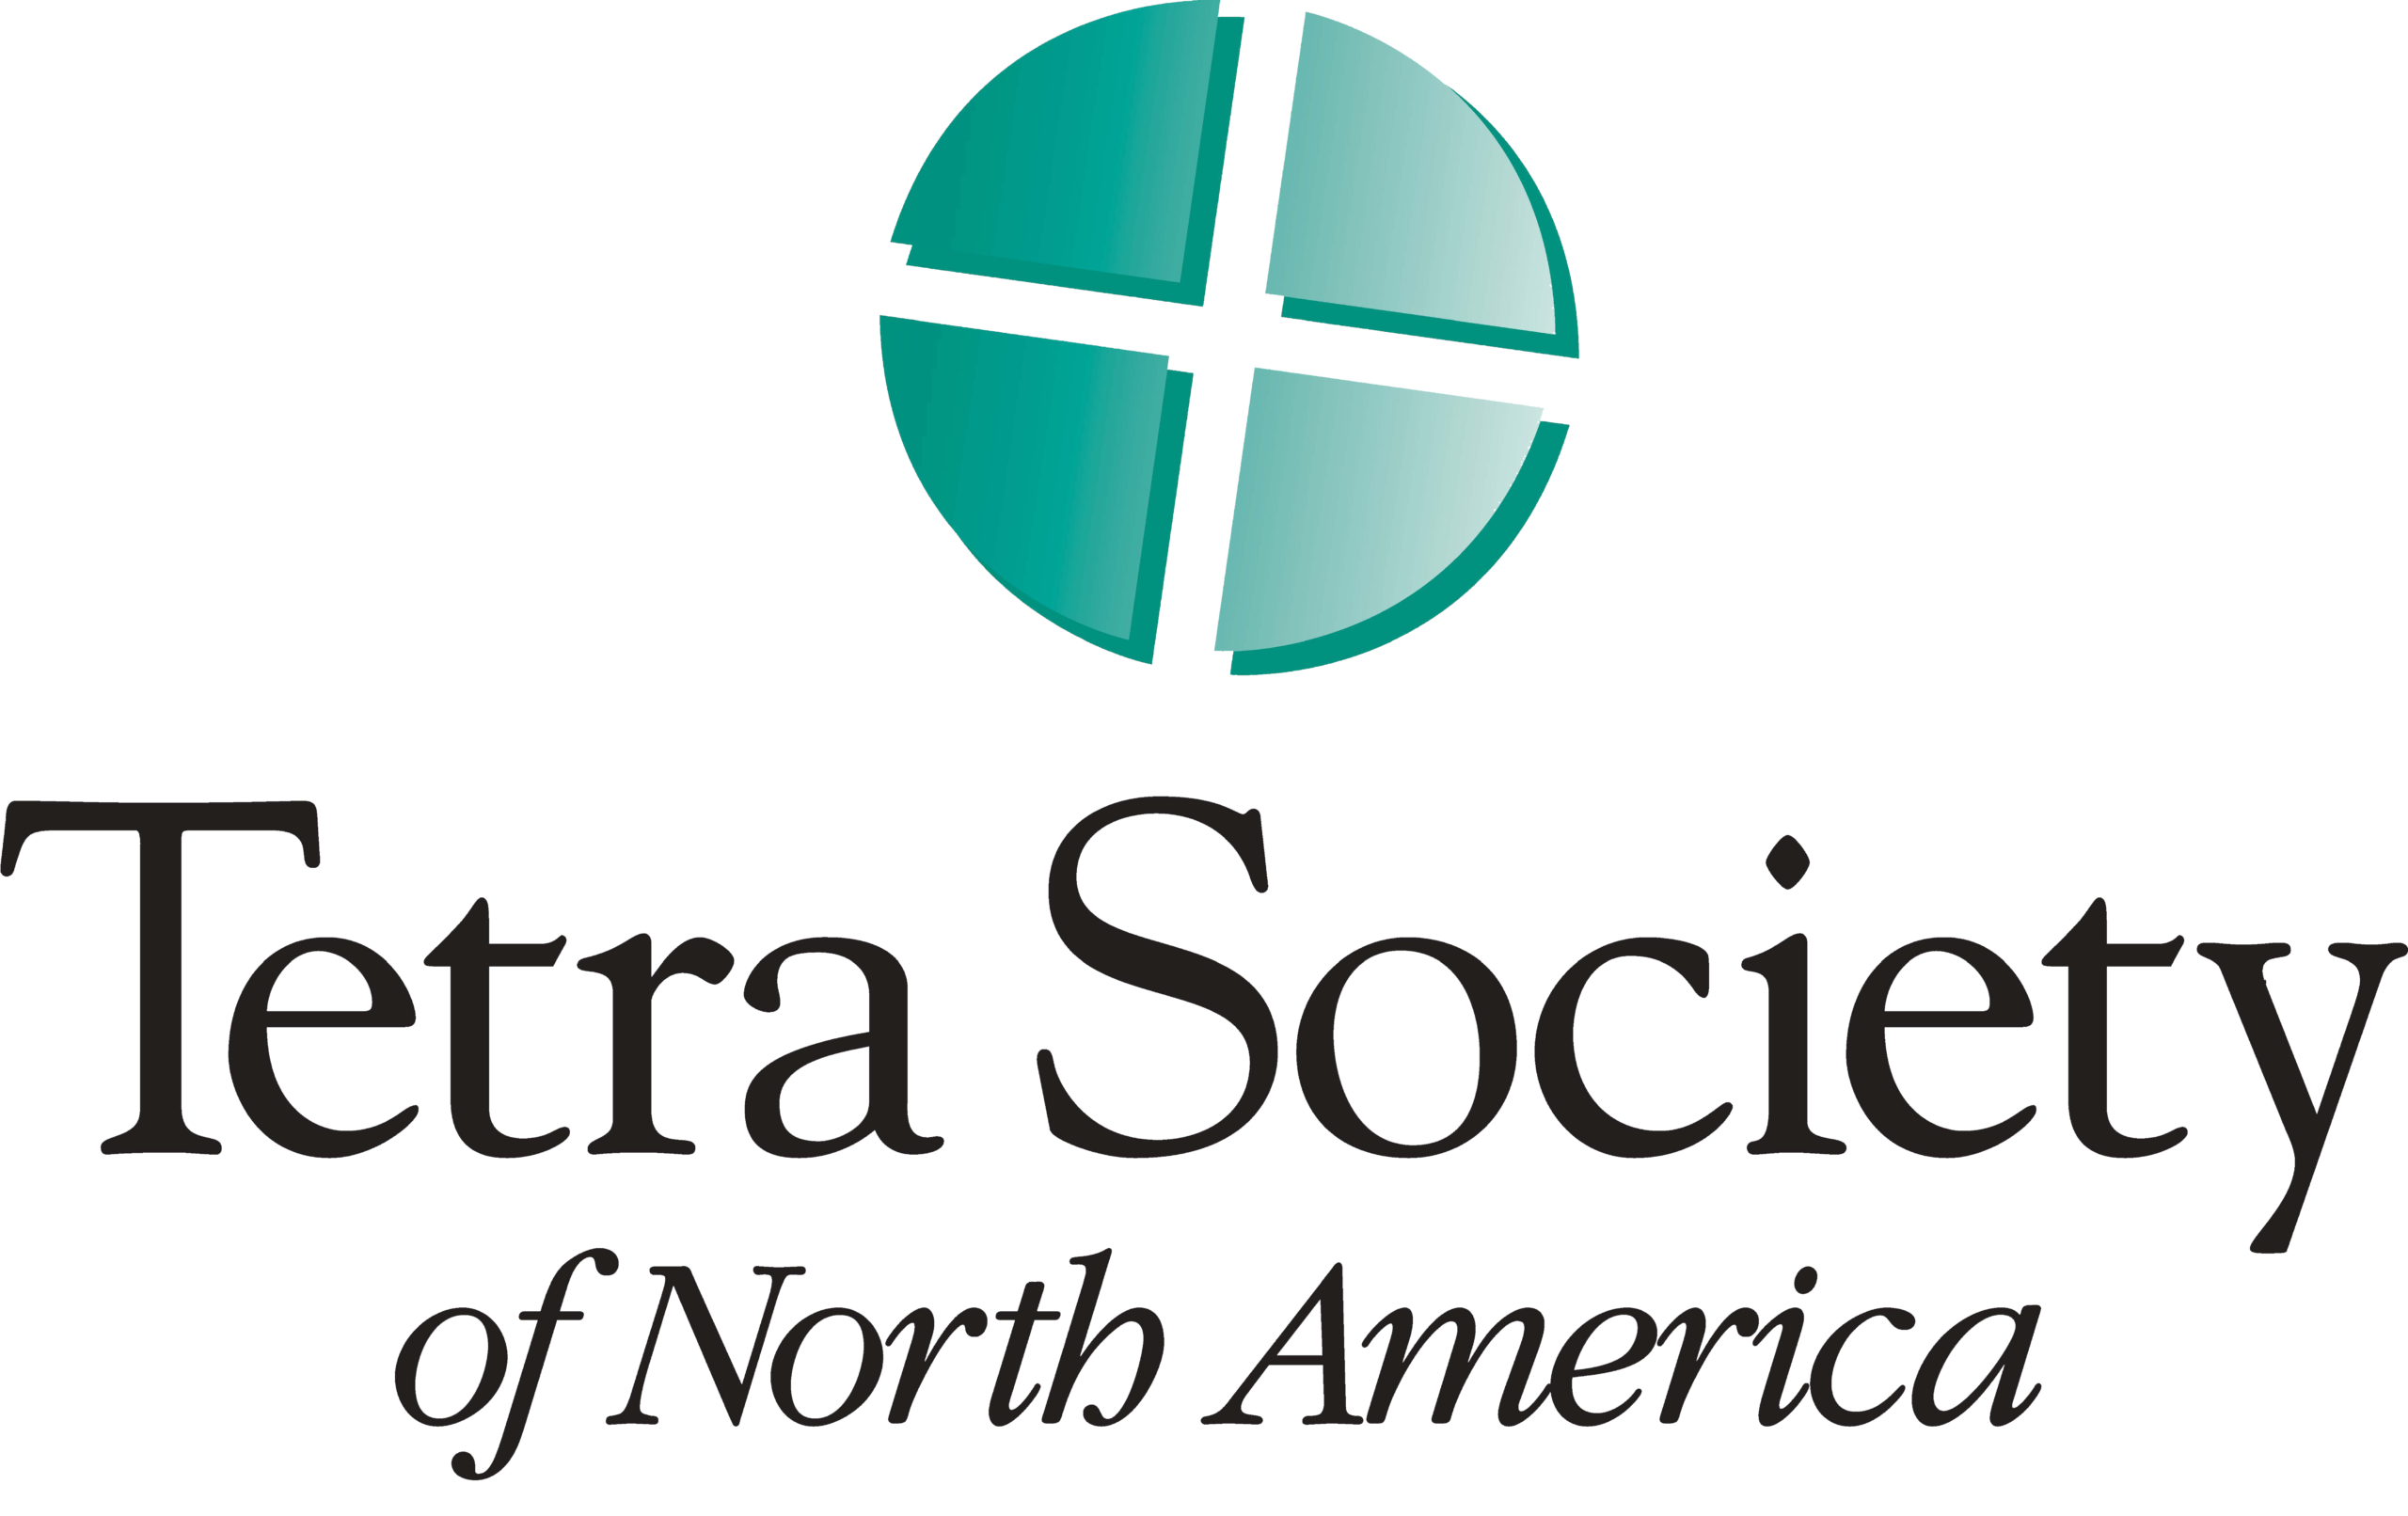 Tetra Society of North America logo.